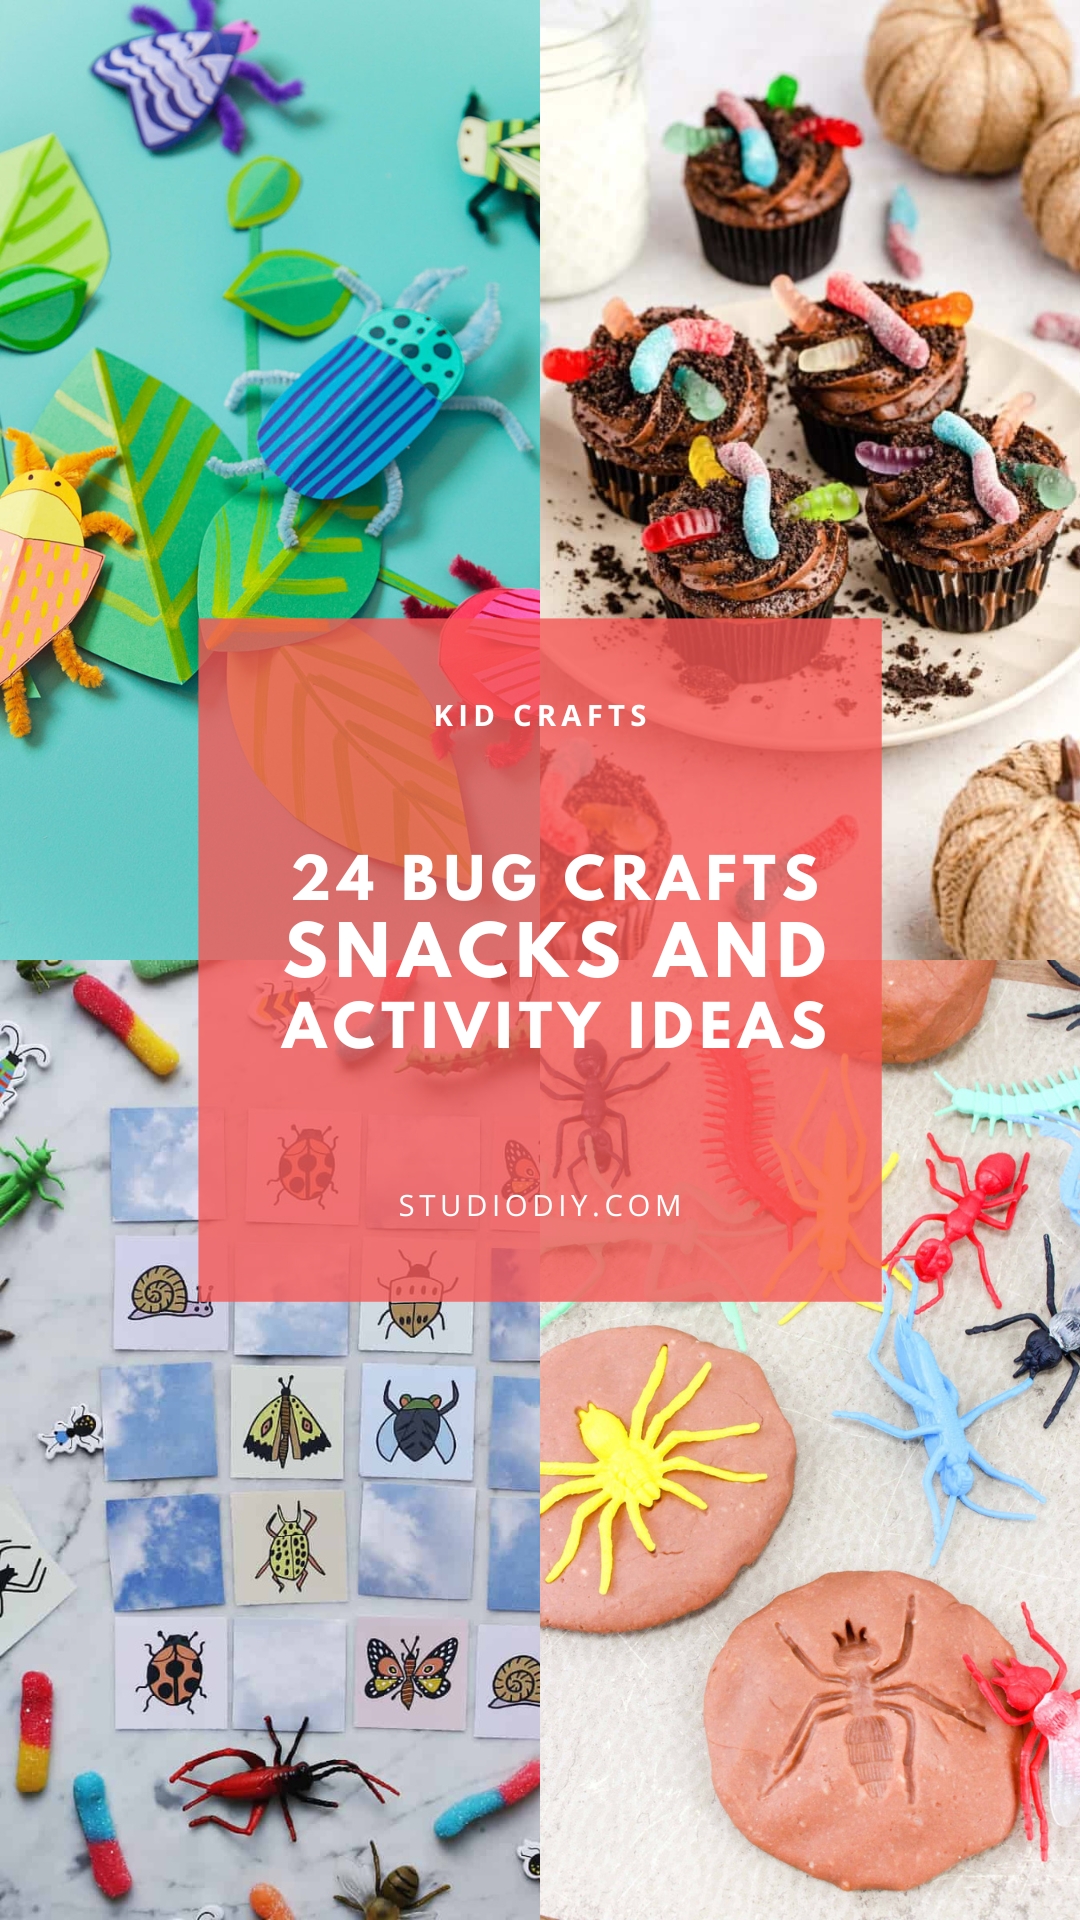 https://studiodiy.com/wp-content/uploads/2020/05/bug-crafts-for-kids.jpg